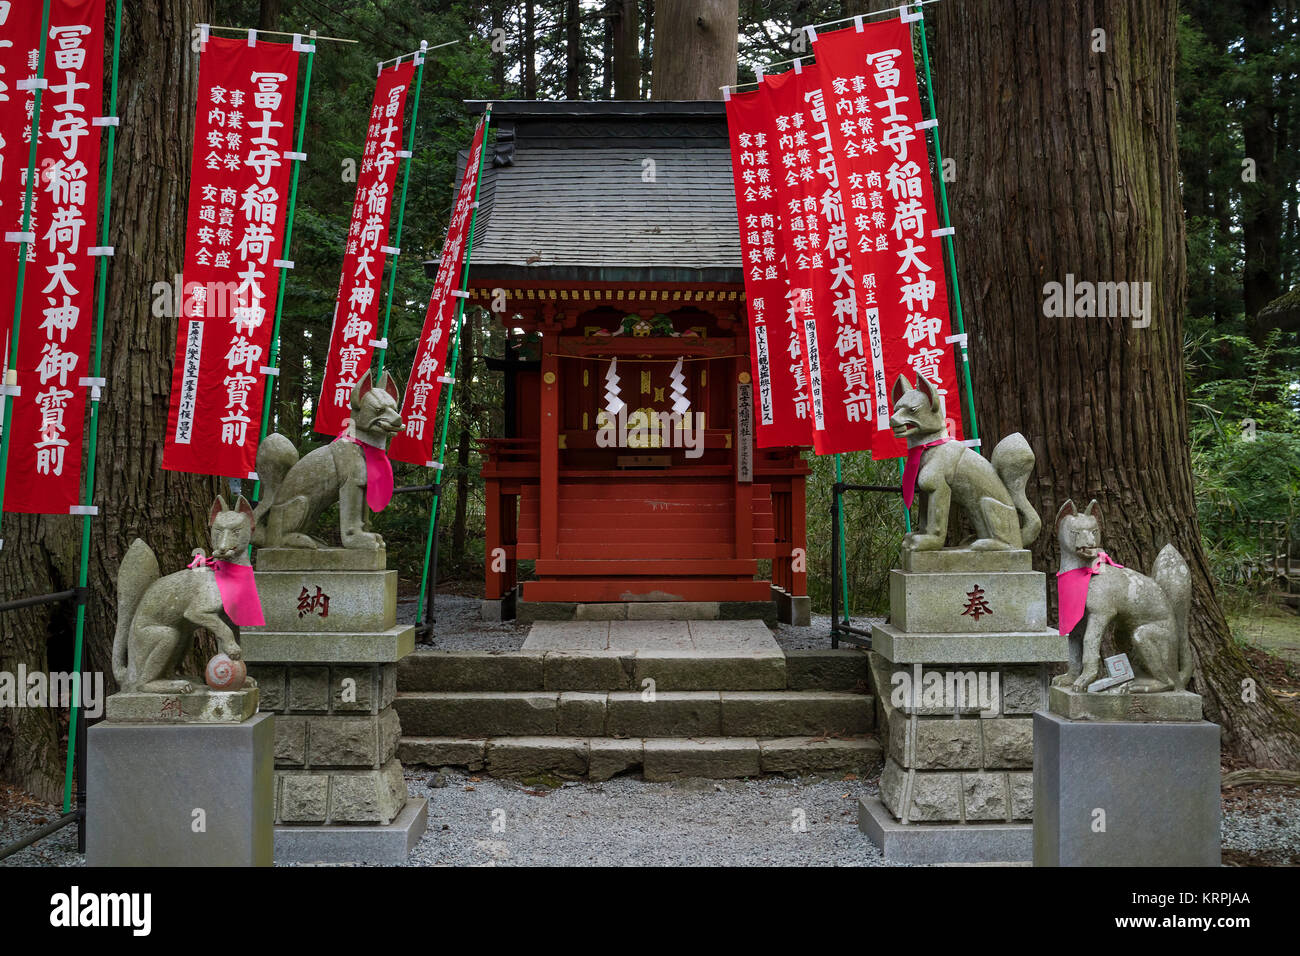 Fujiyoshida city - Giappone, 13 giugno 2017; Kitsunes Votive, fox figurine, custodi di animali nella parte anteriore di un Santuario Inari con red santuario banner Foto Stock